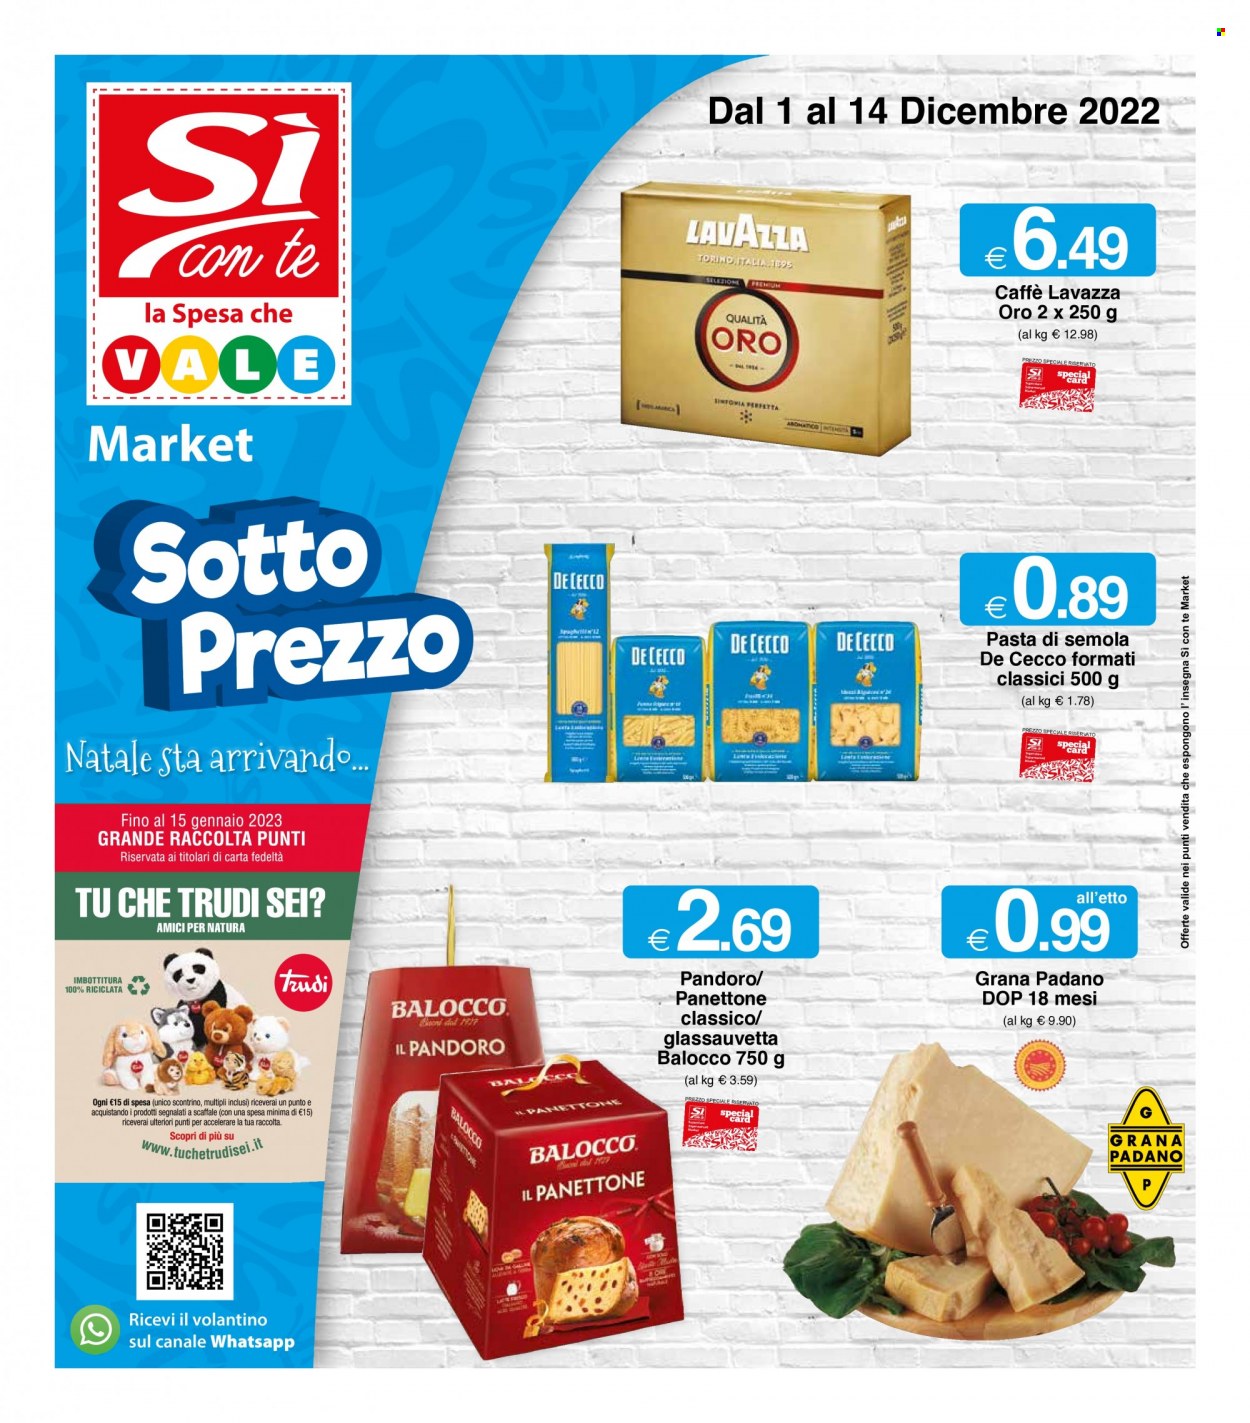 thumbnail - Volantino Si con te Market - 1/12/2022 - 14/12/2022 - Prodotti in offerta - pandoro, panettone, Balocco, formaggio, Grana Padano, De Cecco, pasta, caffè, Lavazza. Pagina 1.